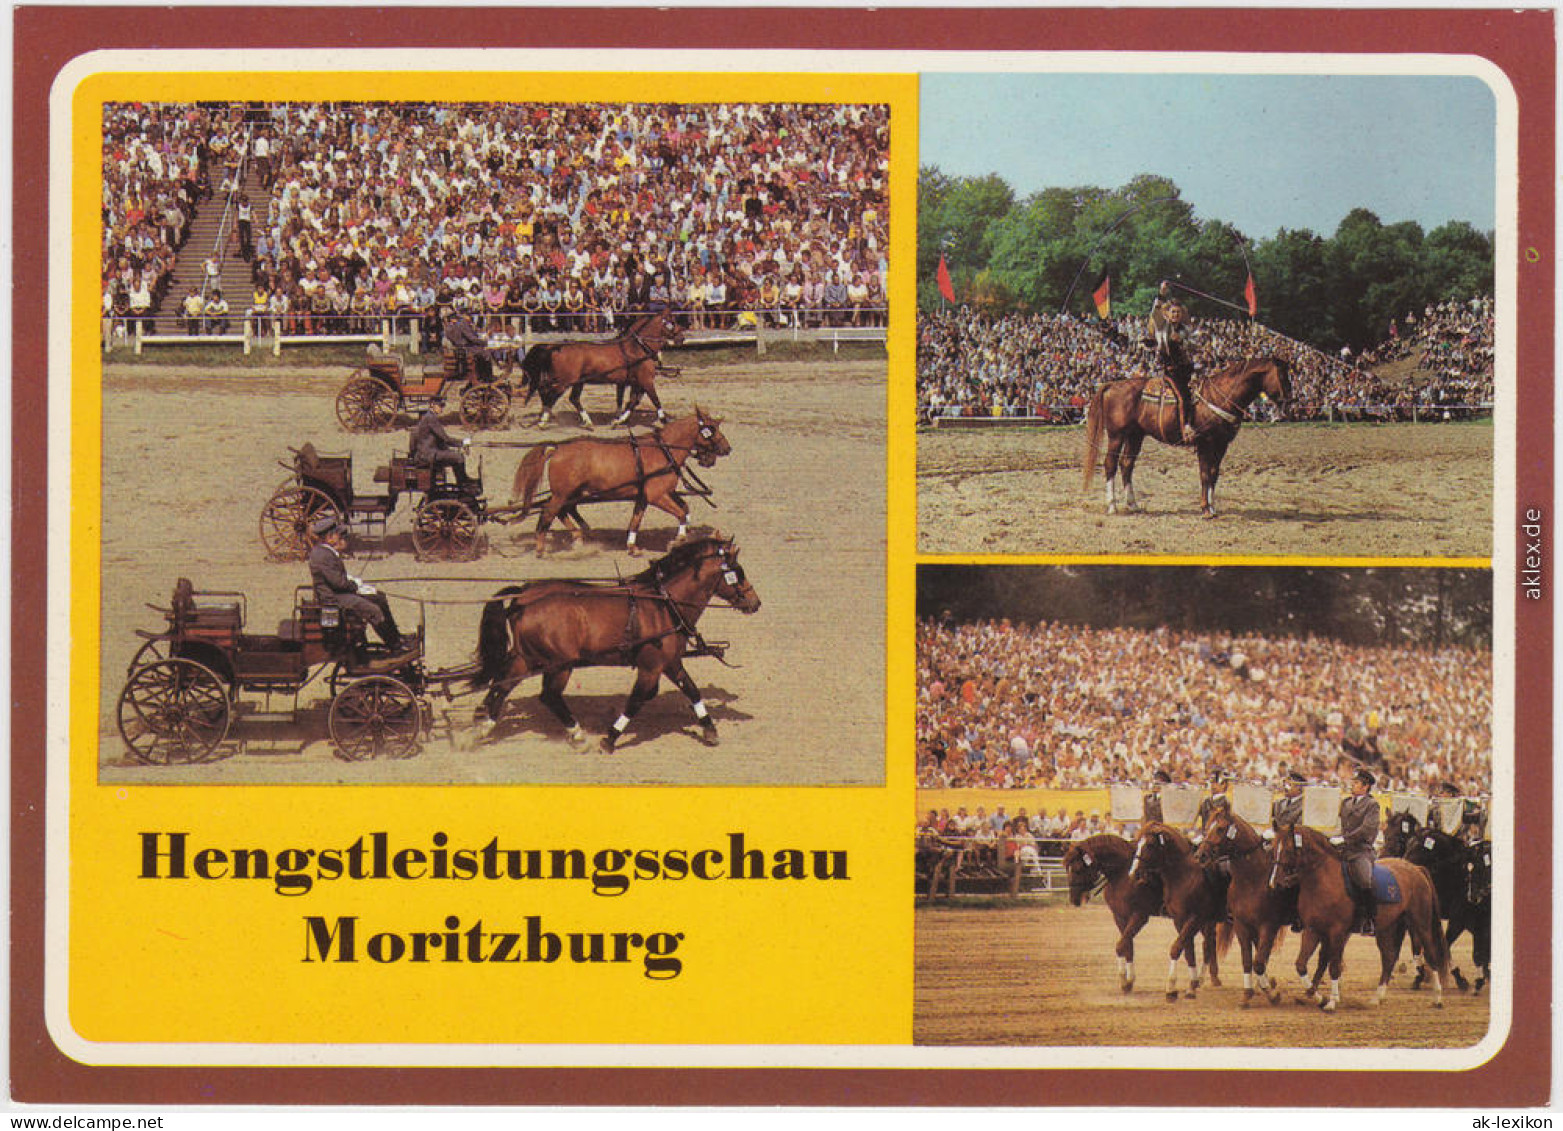 Moritzburg Hengstleistungsschau, Belebt B Radeburg Dresden Ansichtskarte 1986 - Moritzburg